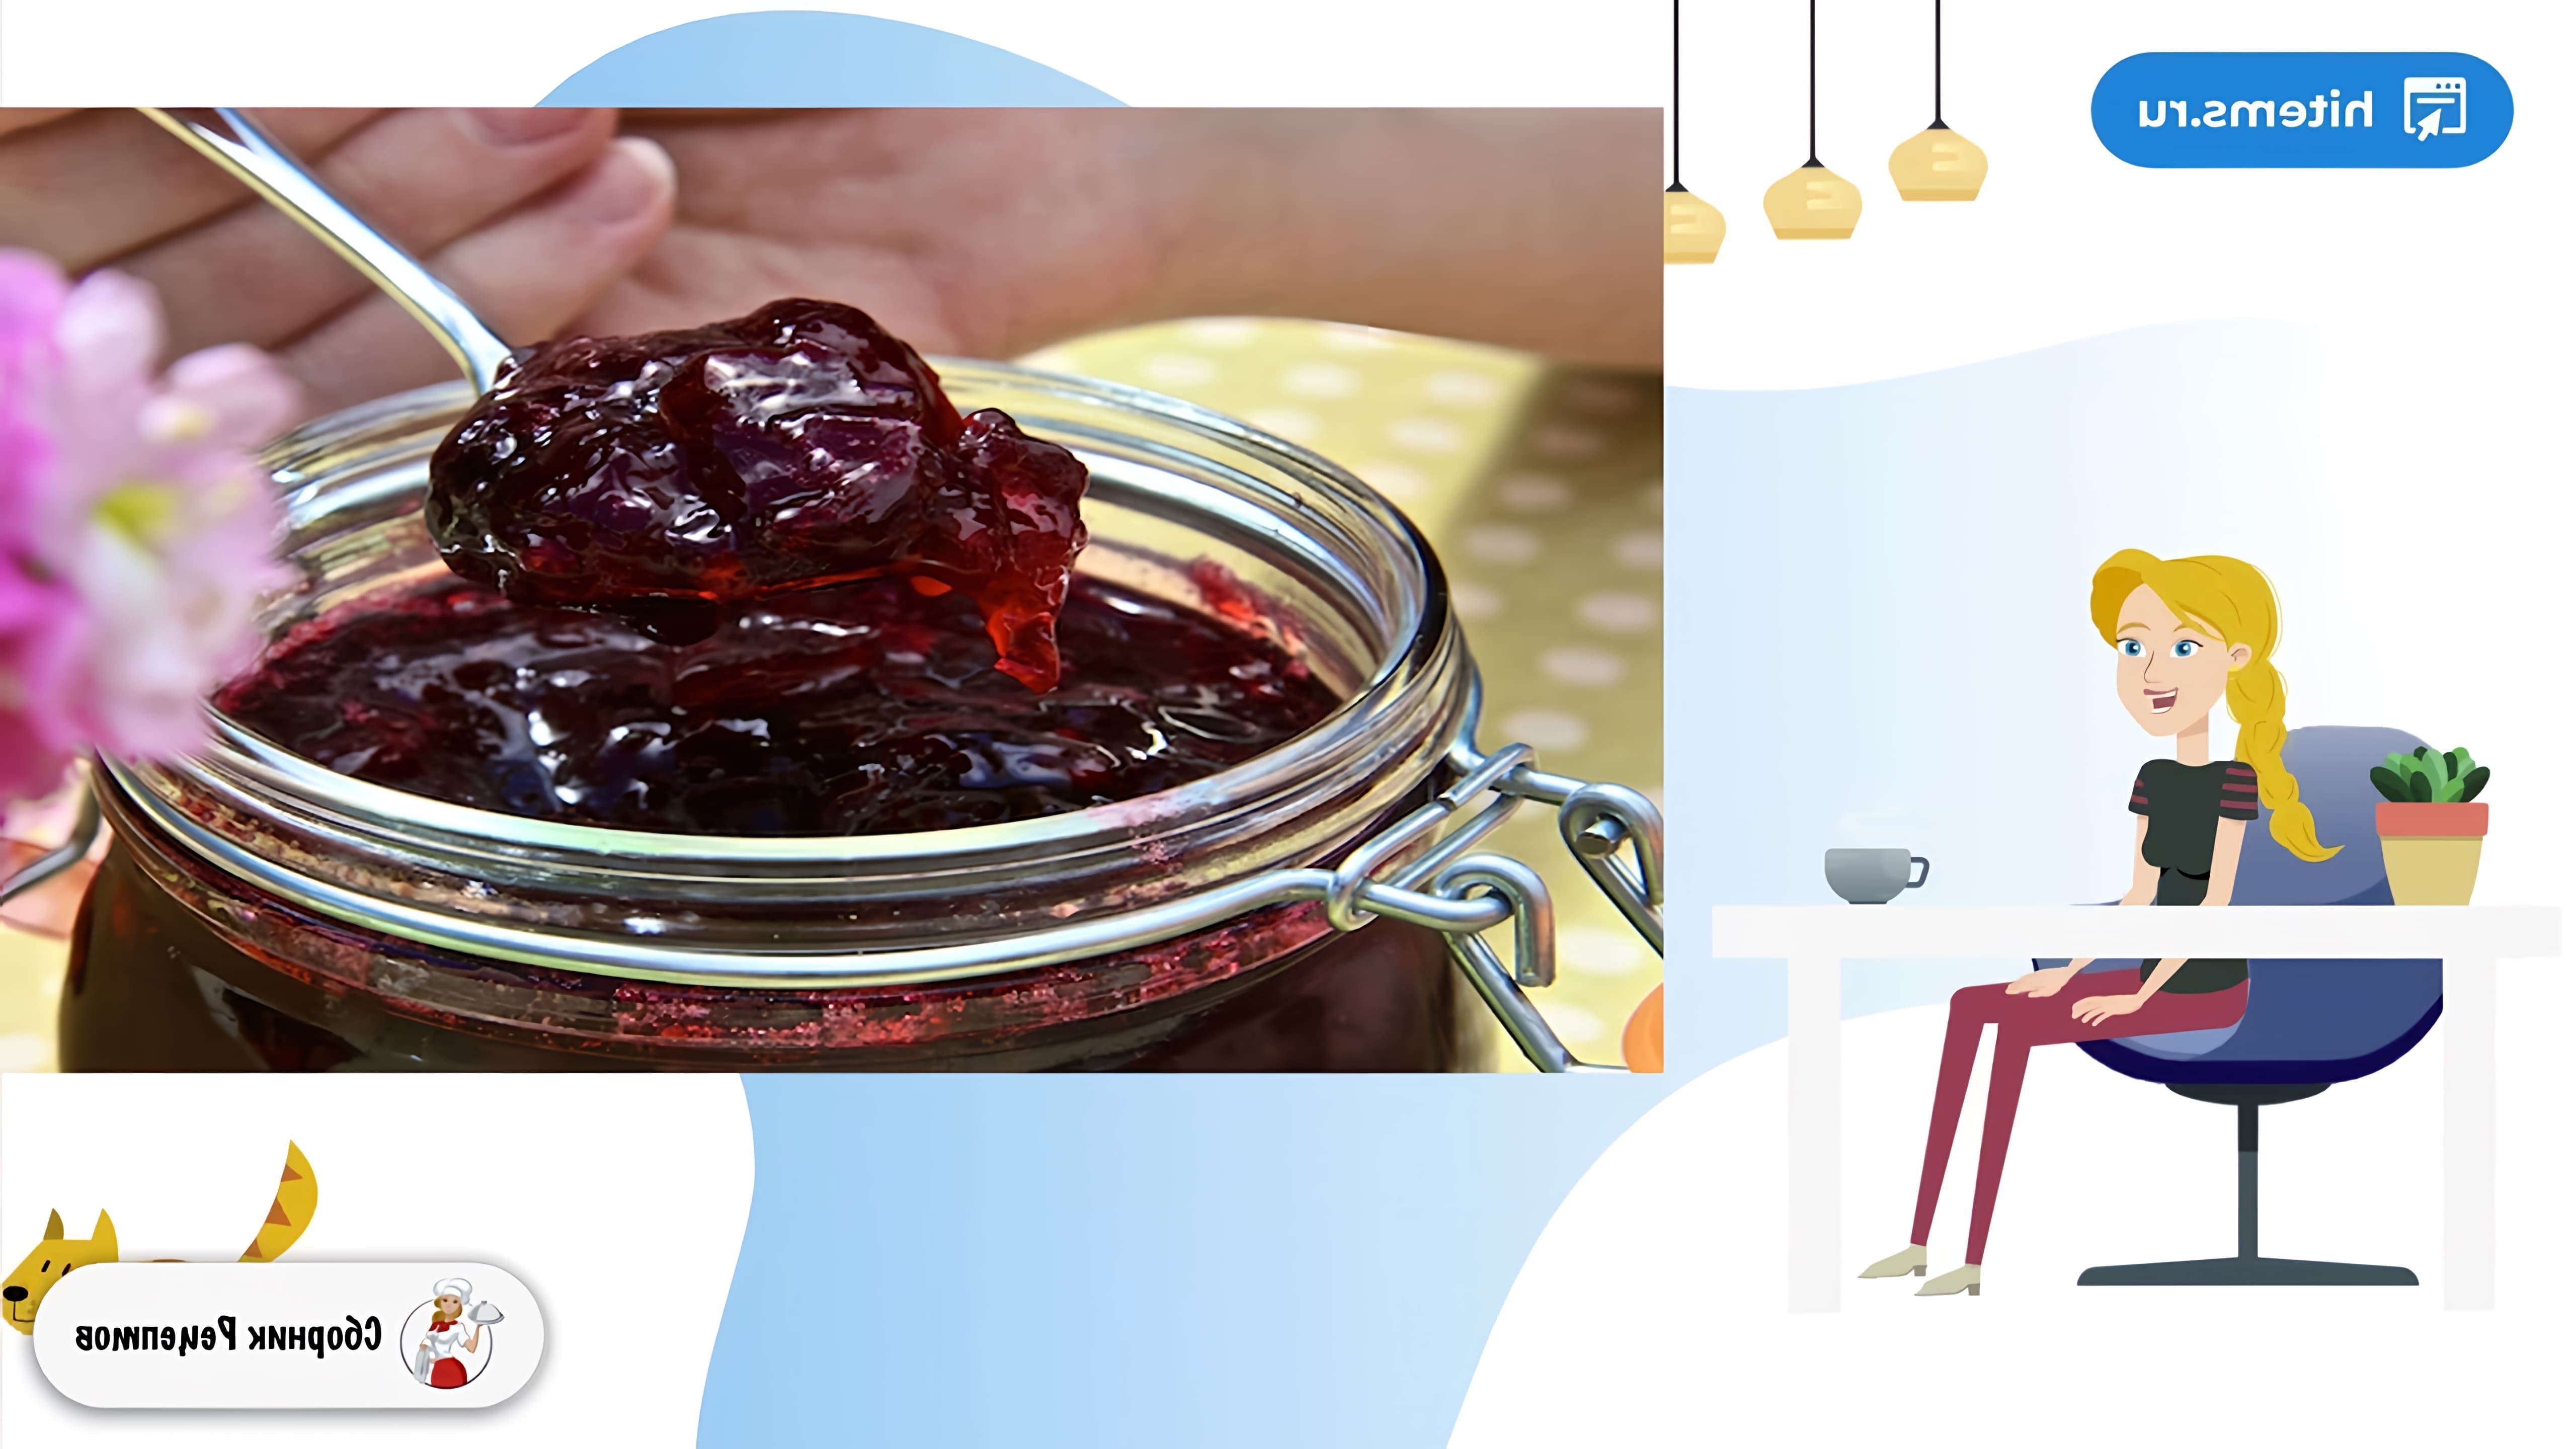 В этом видео показан рецепт приготовления желе из вишни на зиму с желатином